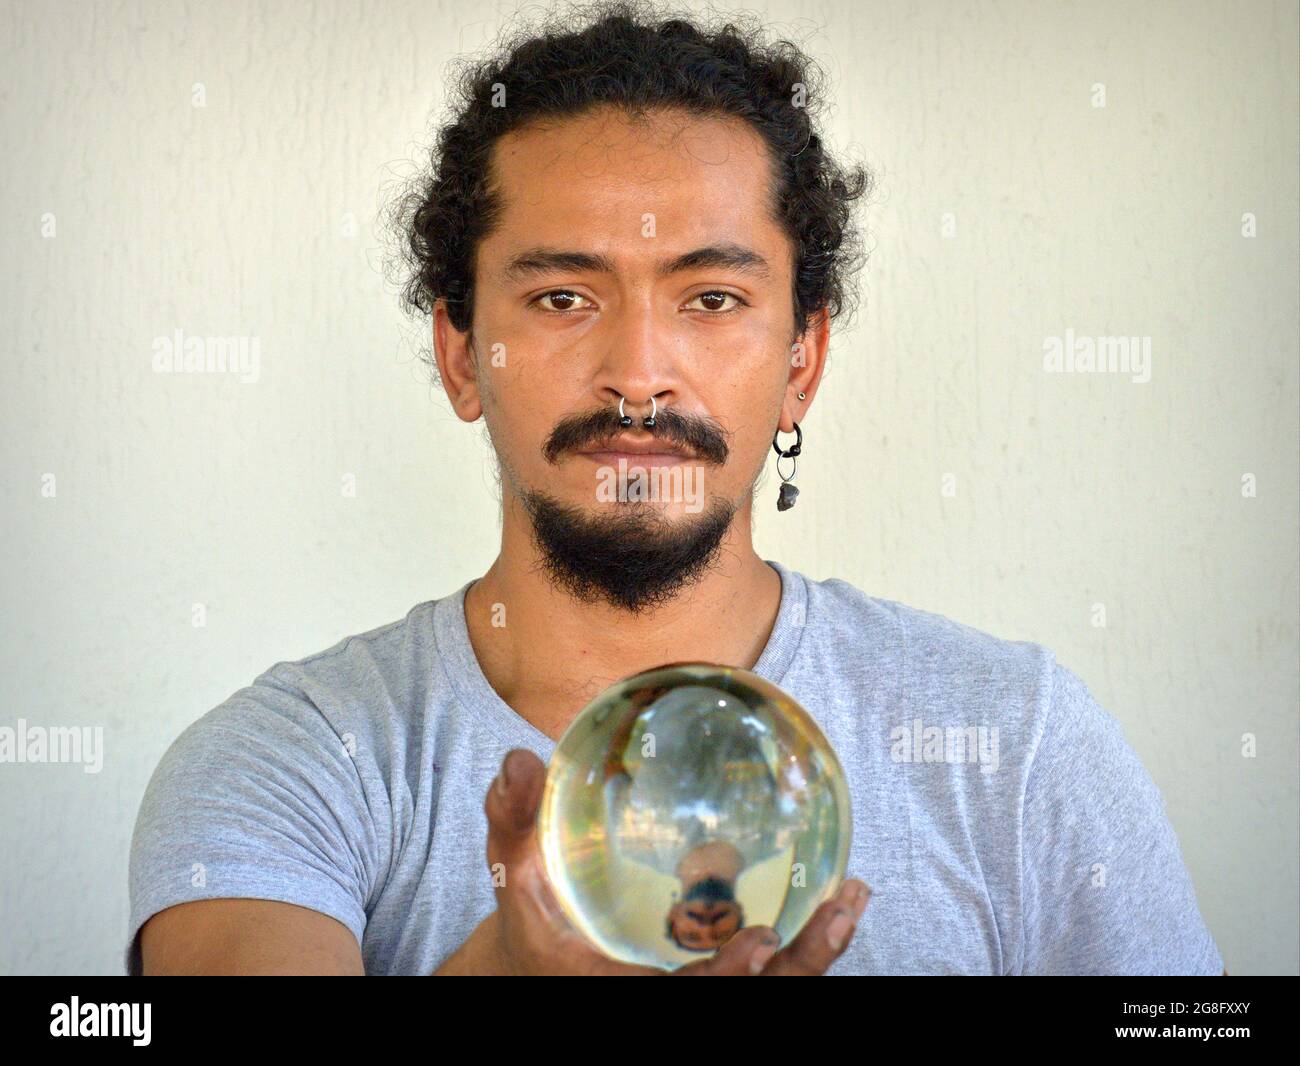 Bell'uomo latino ispanico con anello per naso tiene una palla trasparente con la sua immagine speculare nella mano destra e guarda lo spettatore. Foto Stock